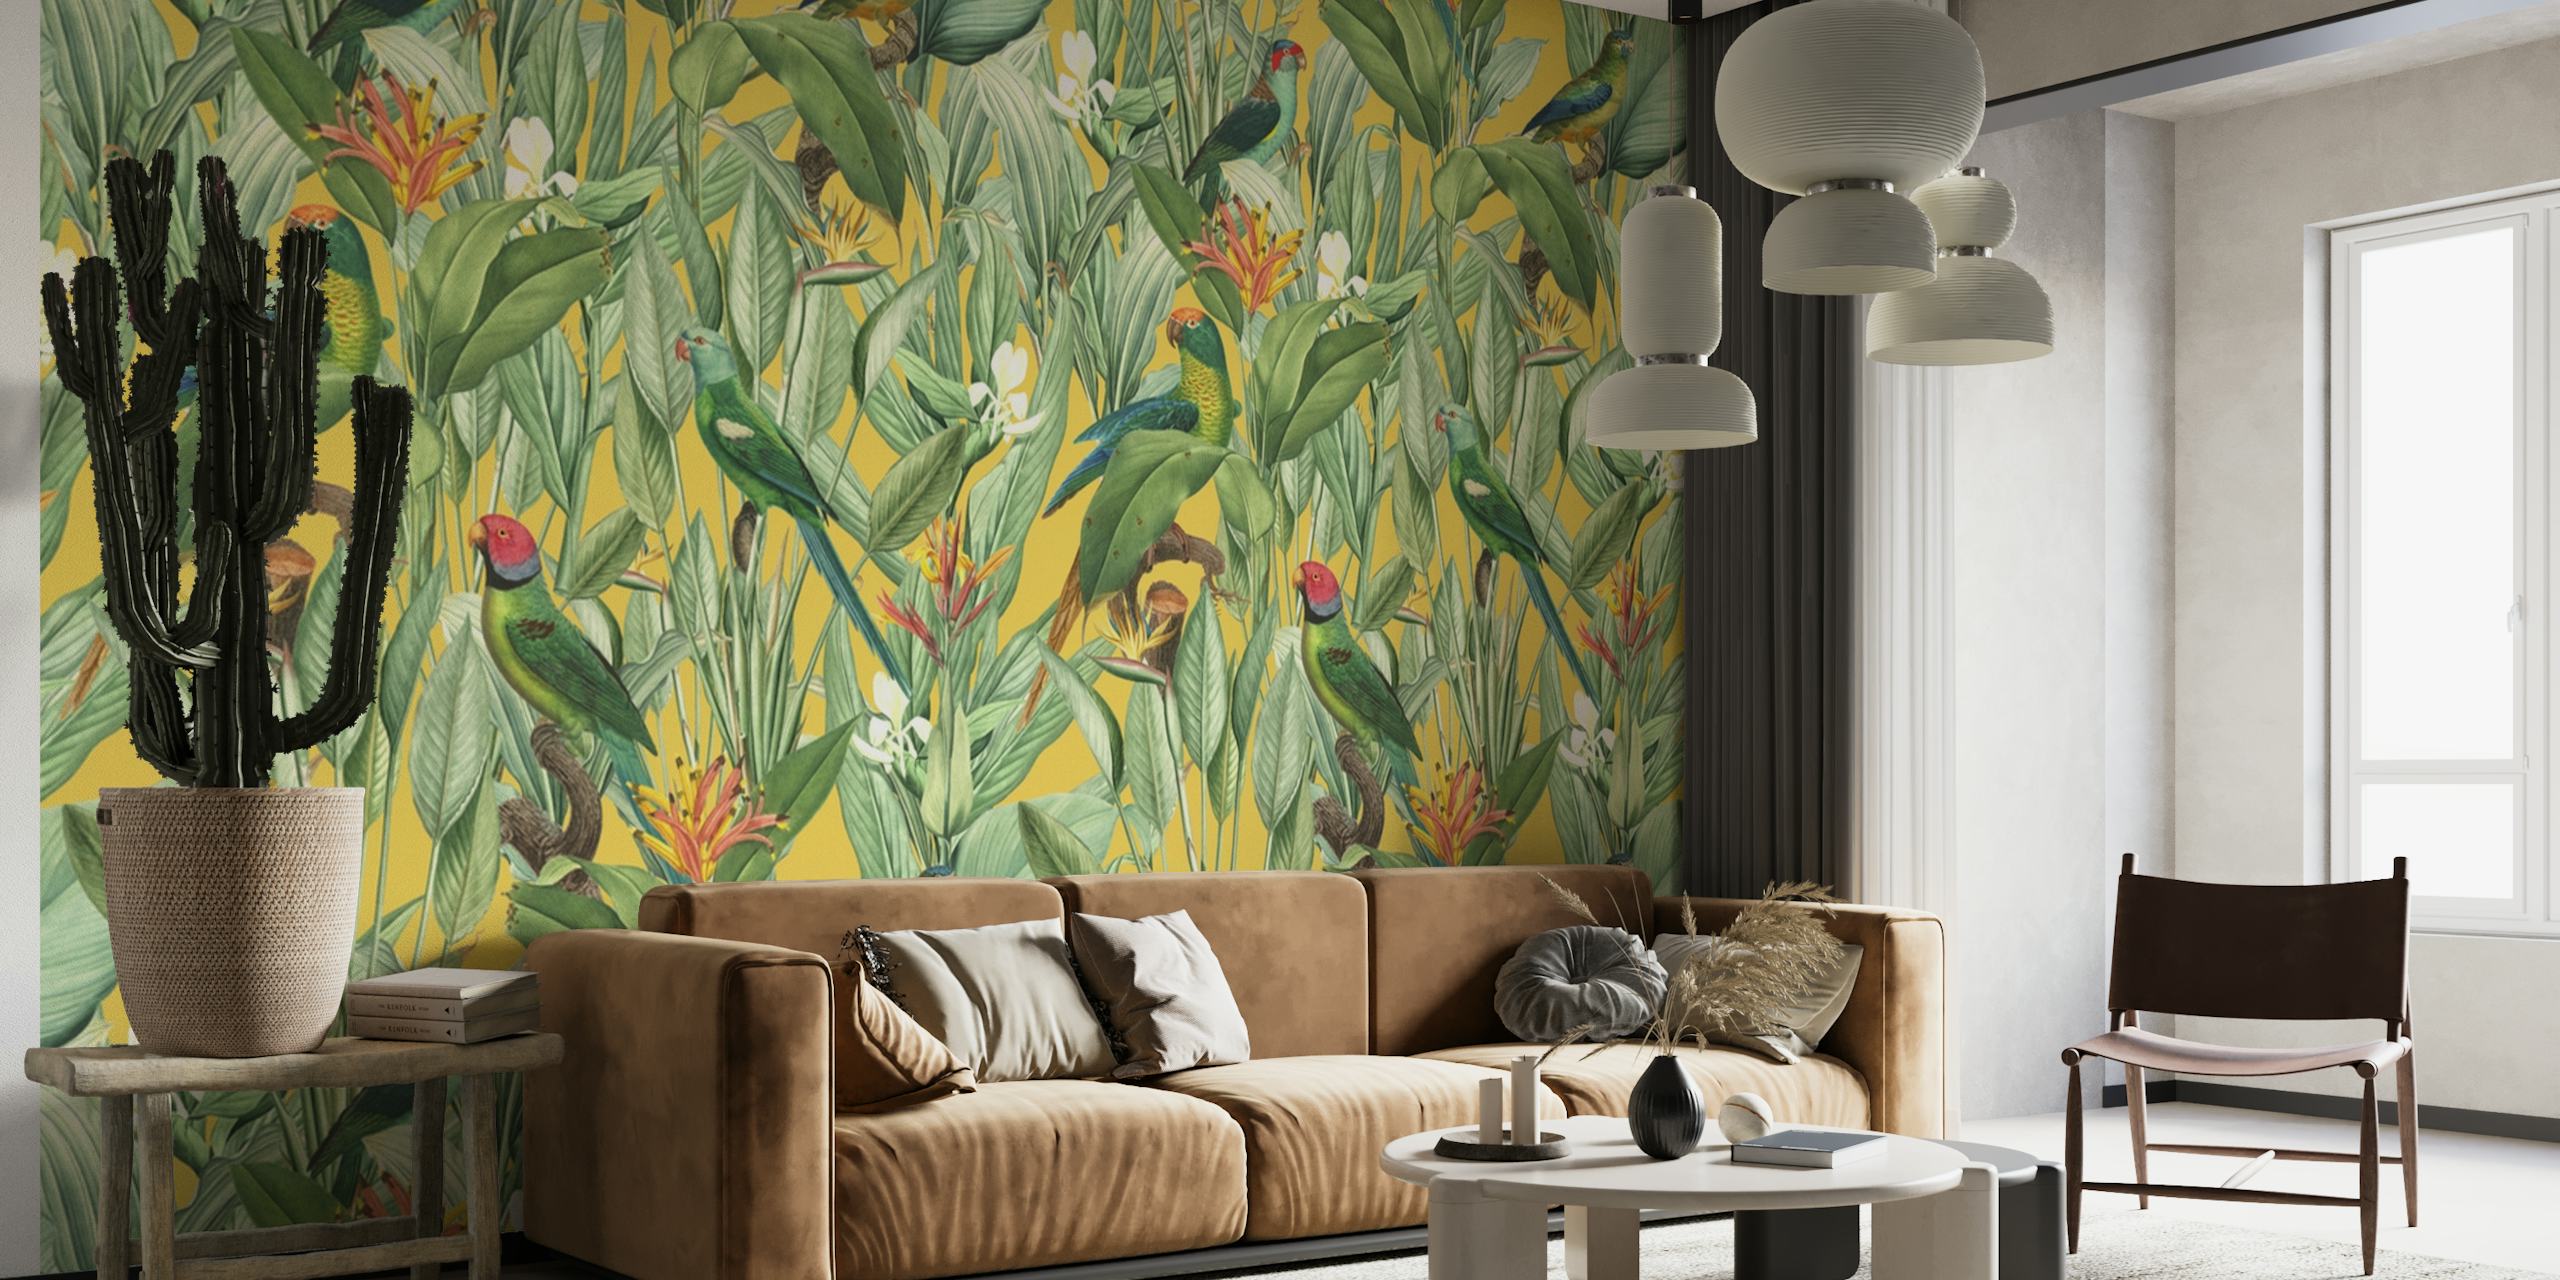 Zidna slika inspirirana starinom koja prikazuje tropsku džunglu sa zlatnim detaljima